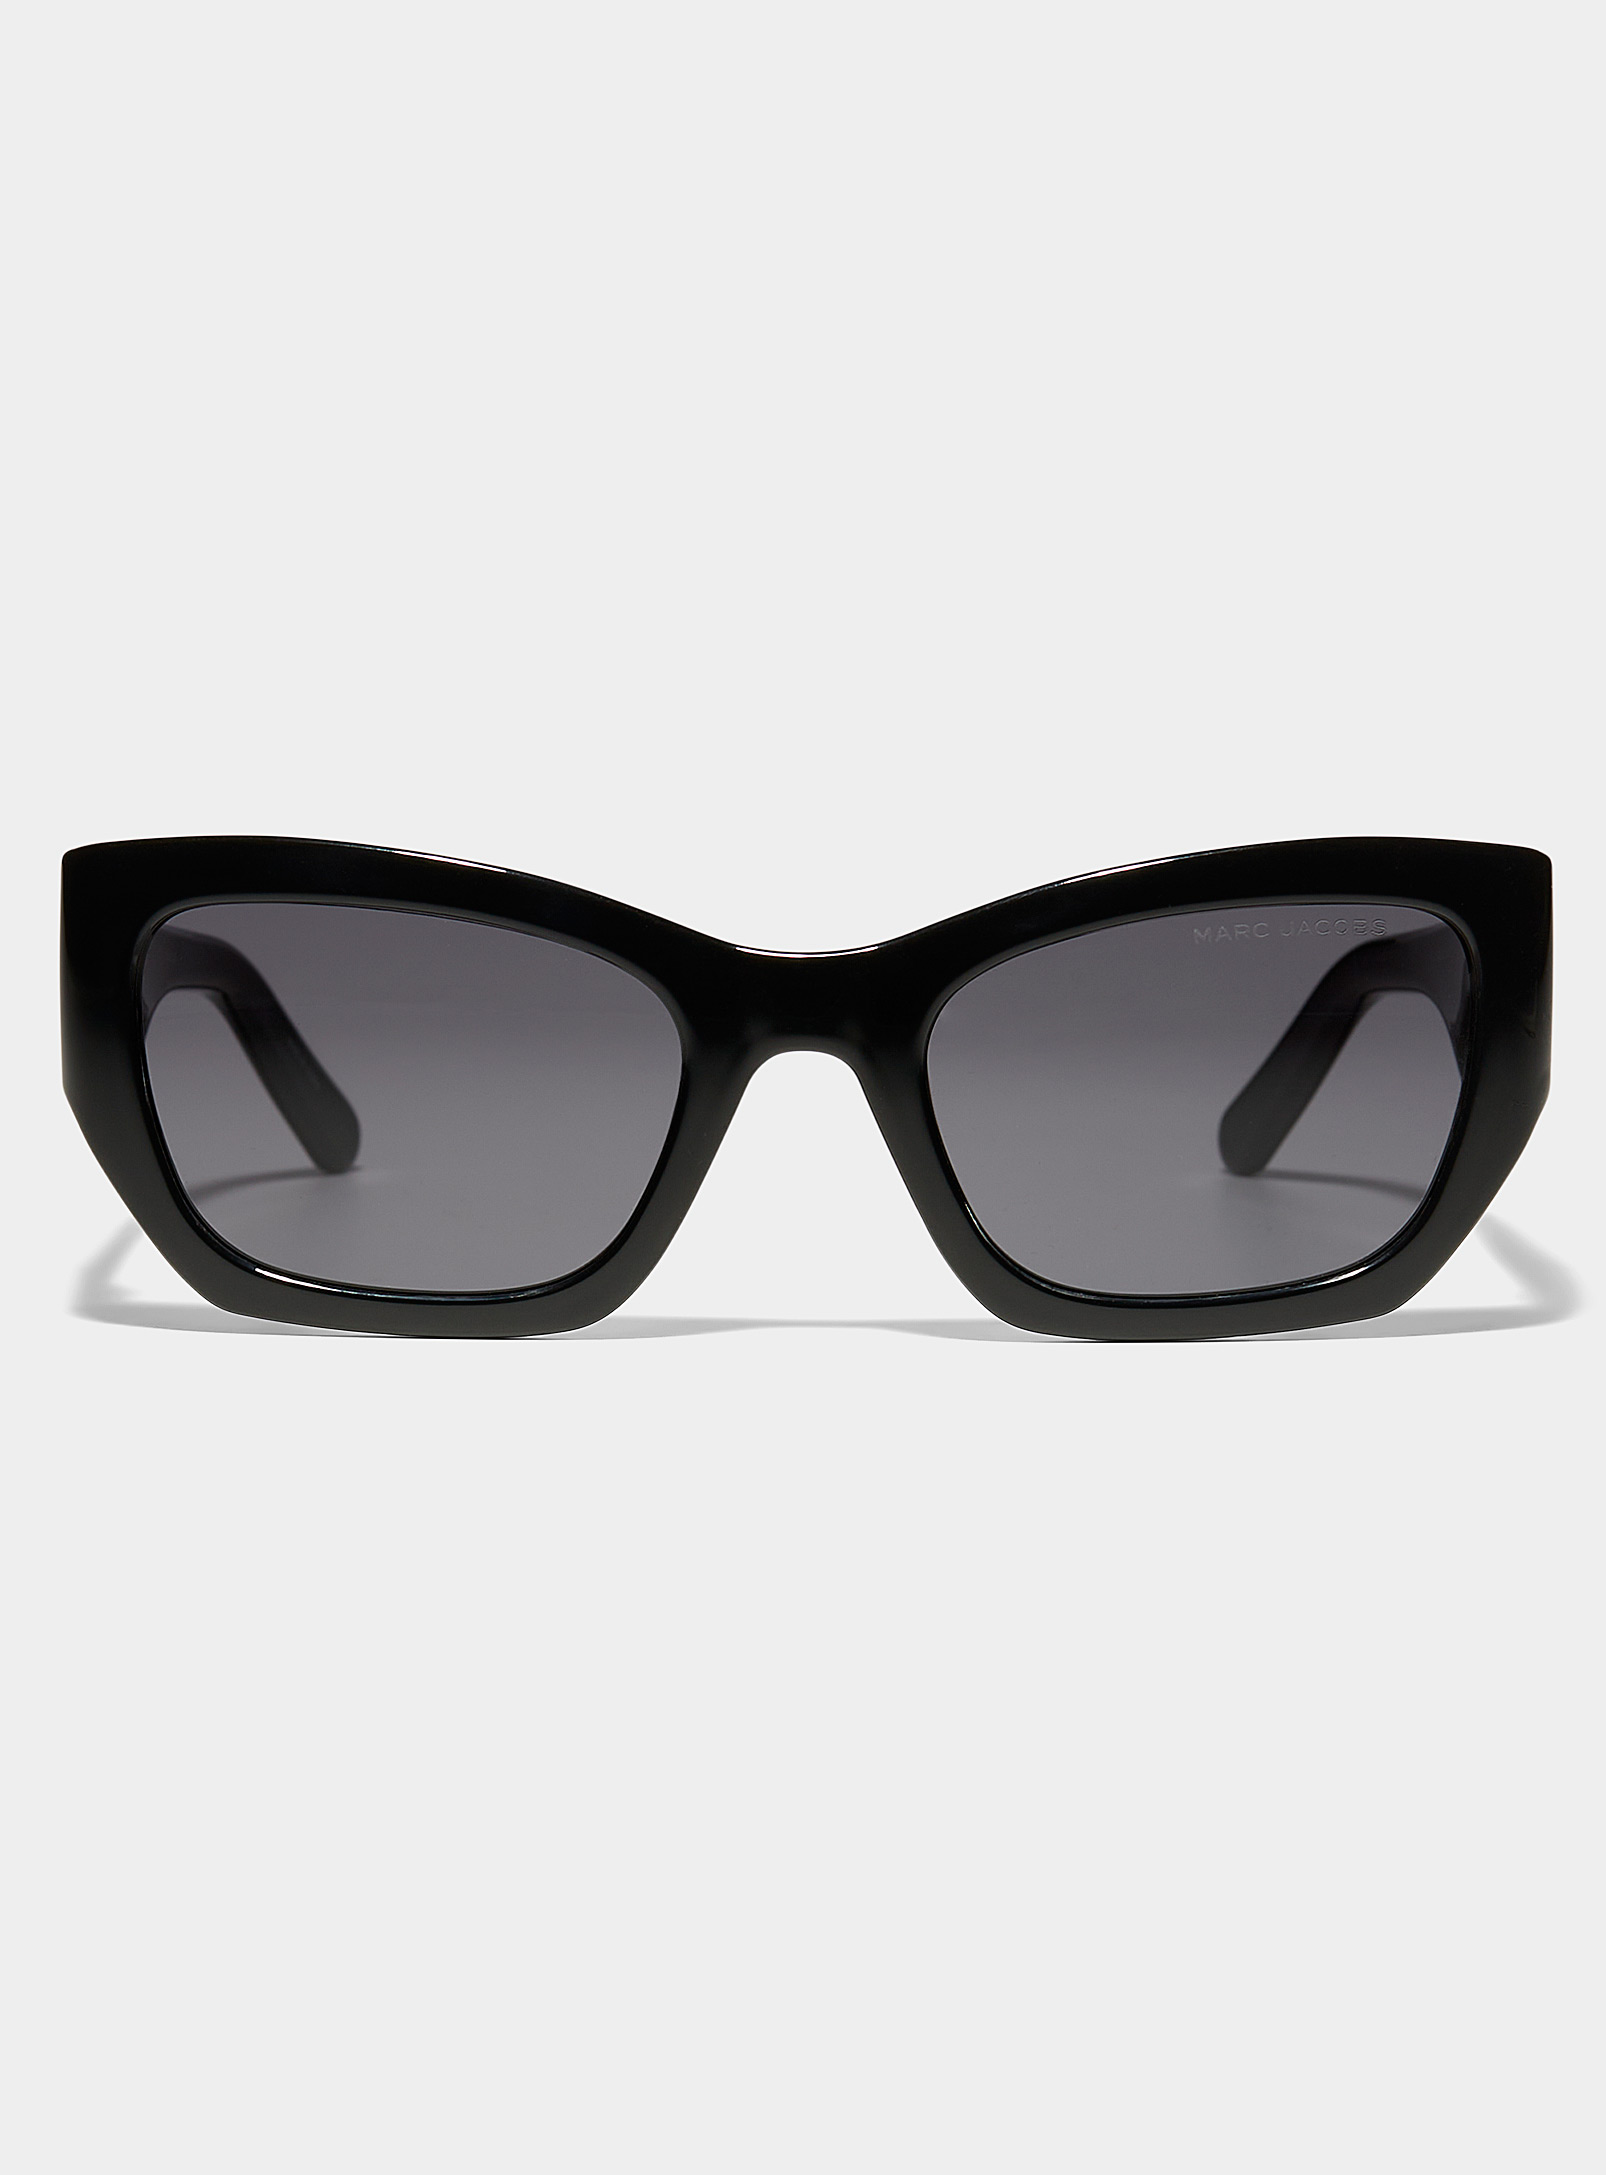 Marc Jacobs - Les lunettes de soleil oeil de chat monogramme ton sur ton